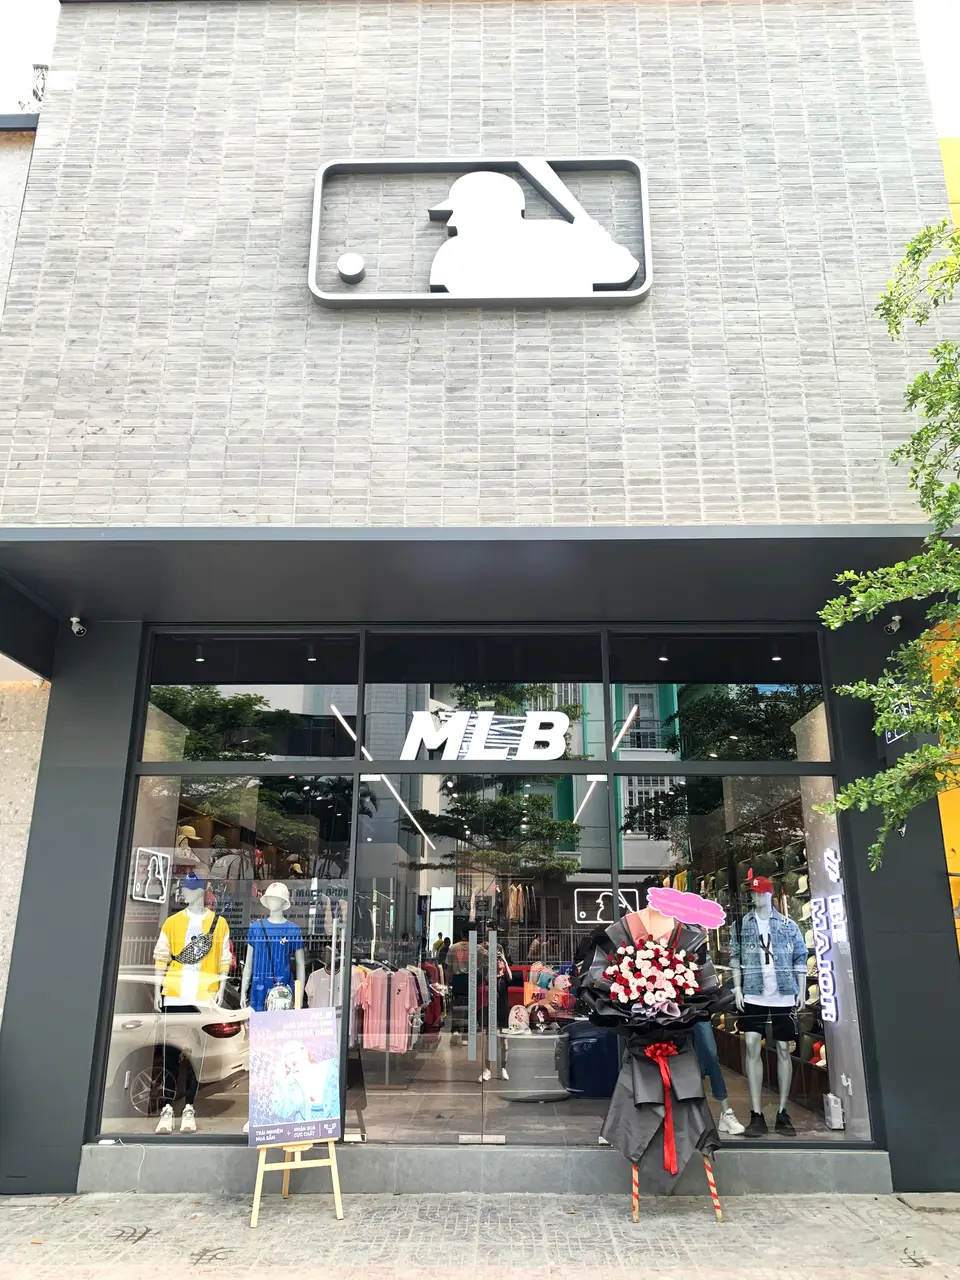 MLB Vietnam  23 Tràng Tiền  Cửa Hàng Quần Áo Thể Thao ở Hà Nội